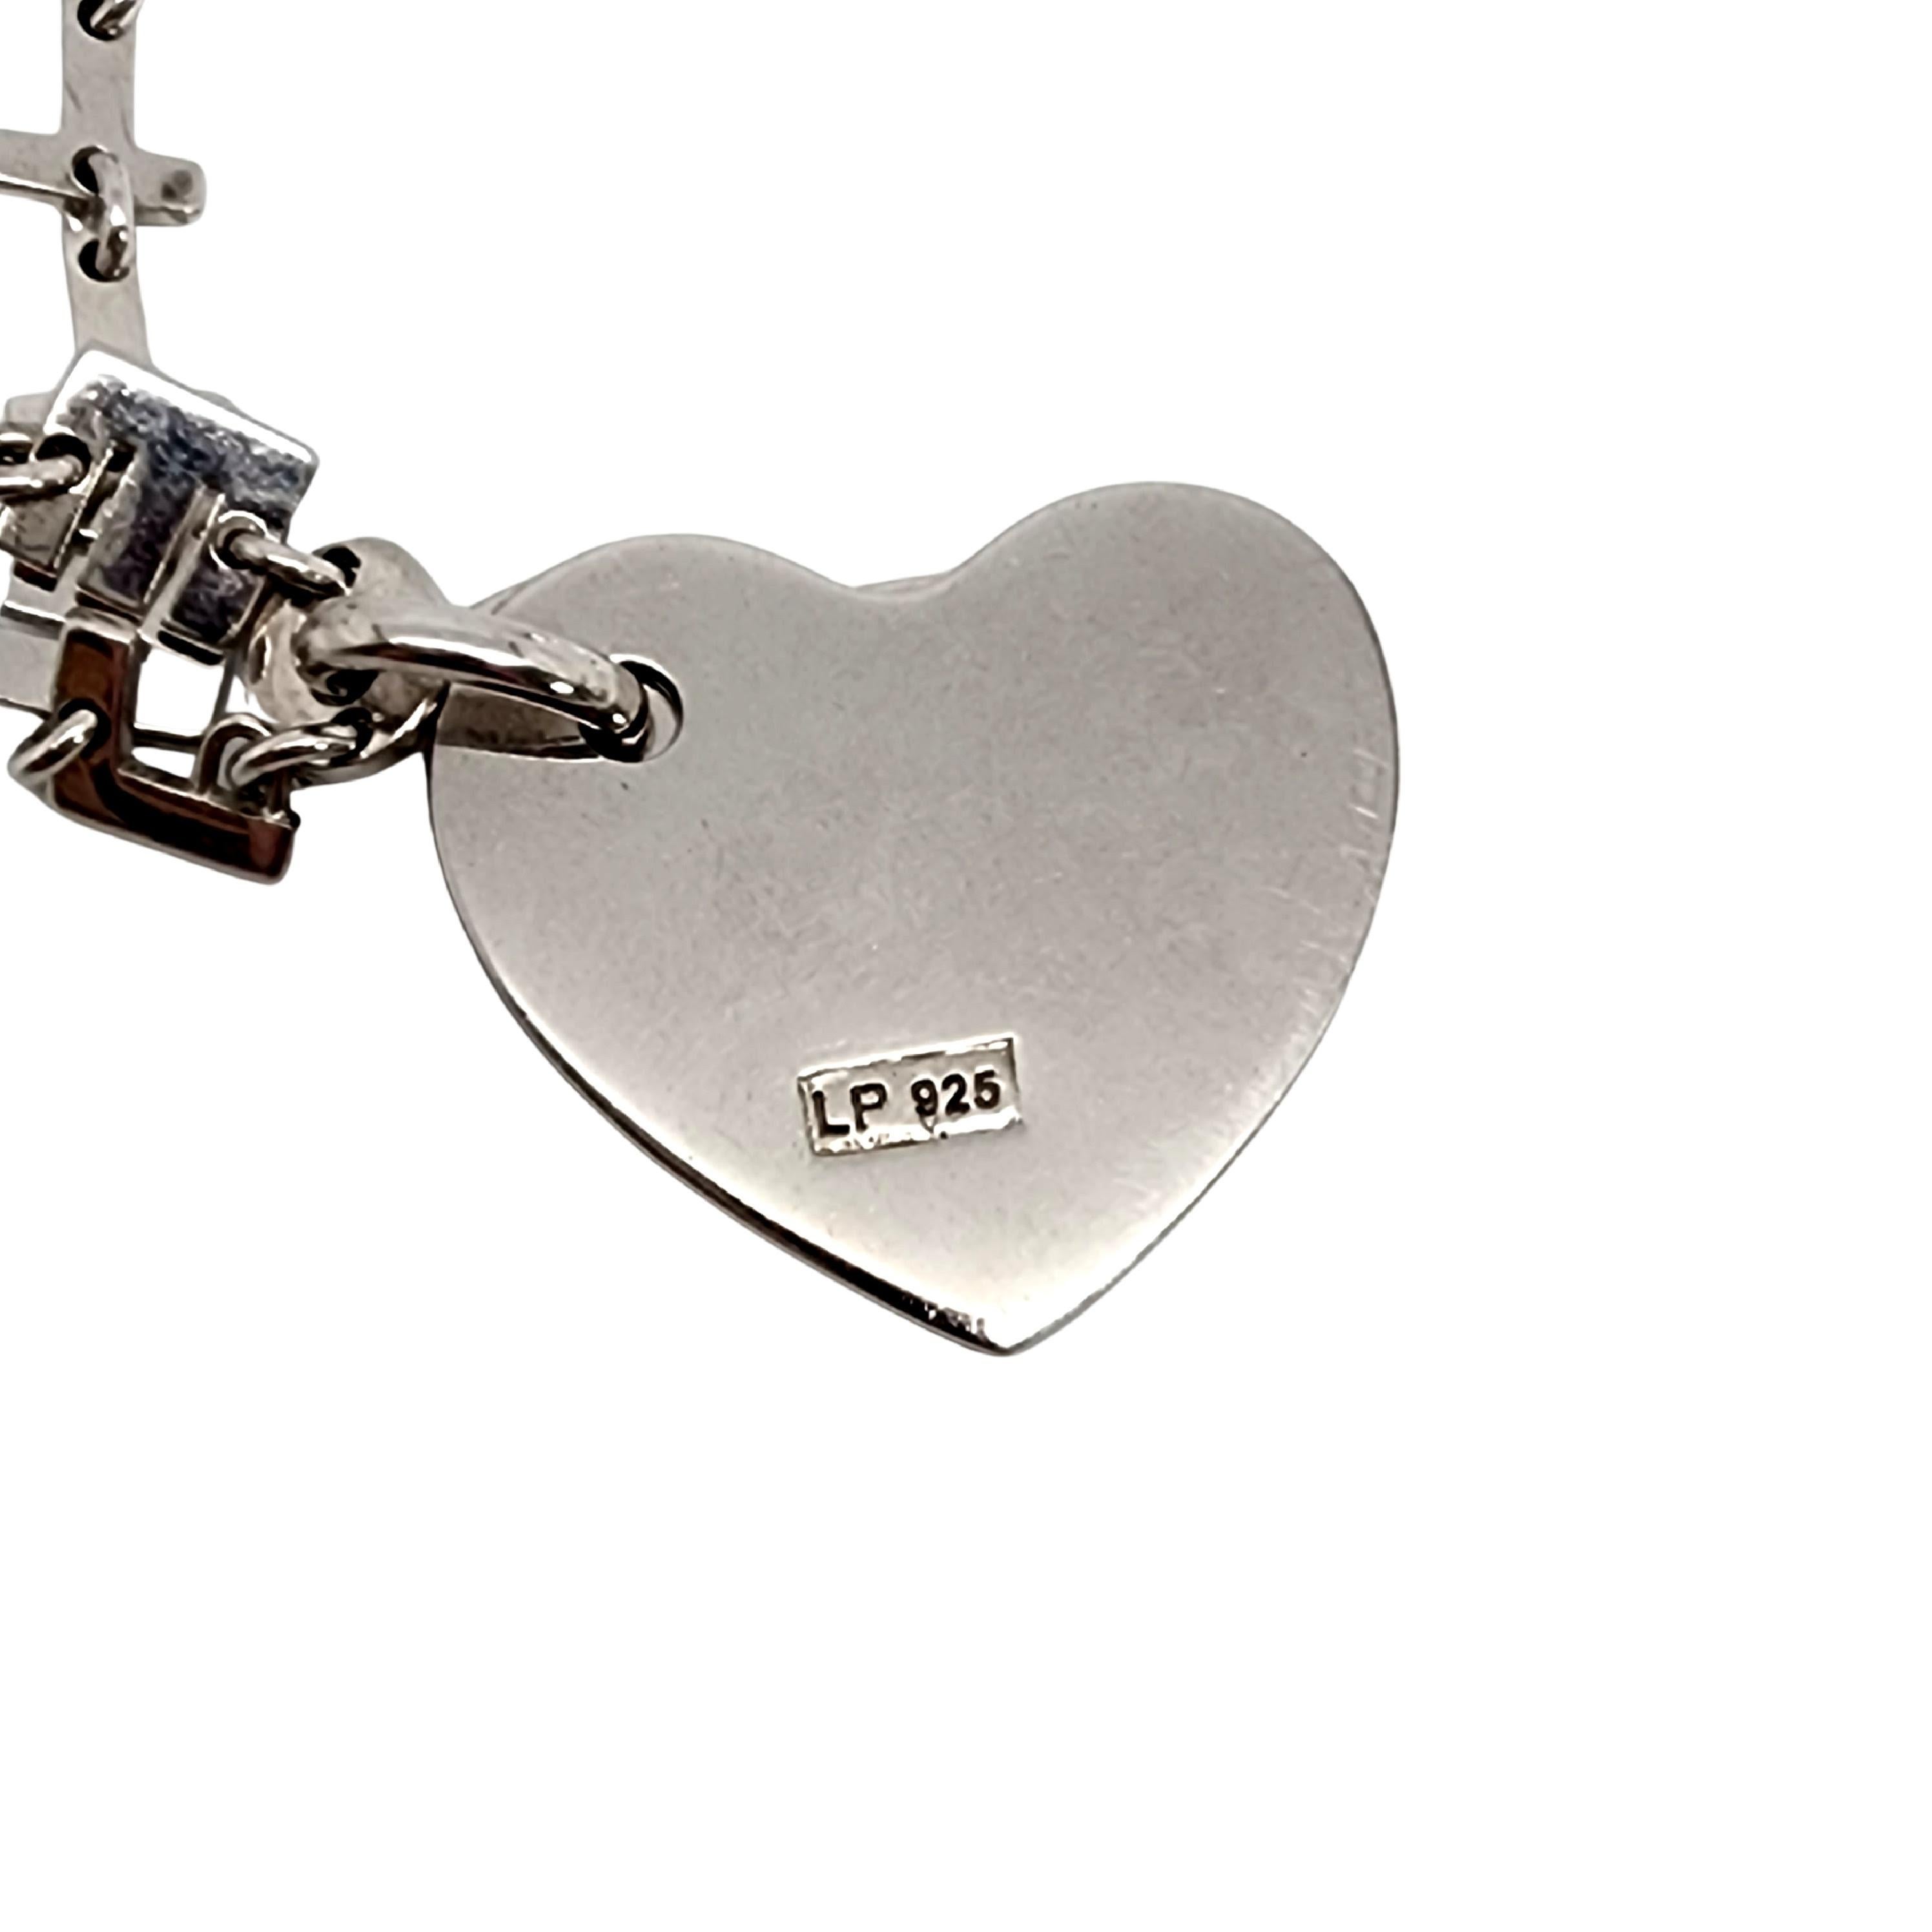 Designer LP 925 Sterling Silver Lettere D'Amore Love Letters Necklace #13372 For Sale 1